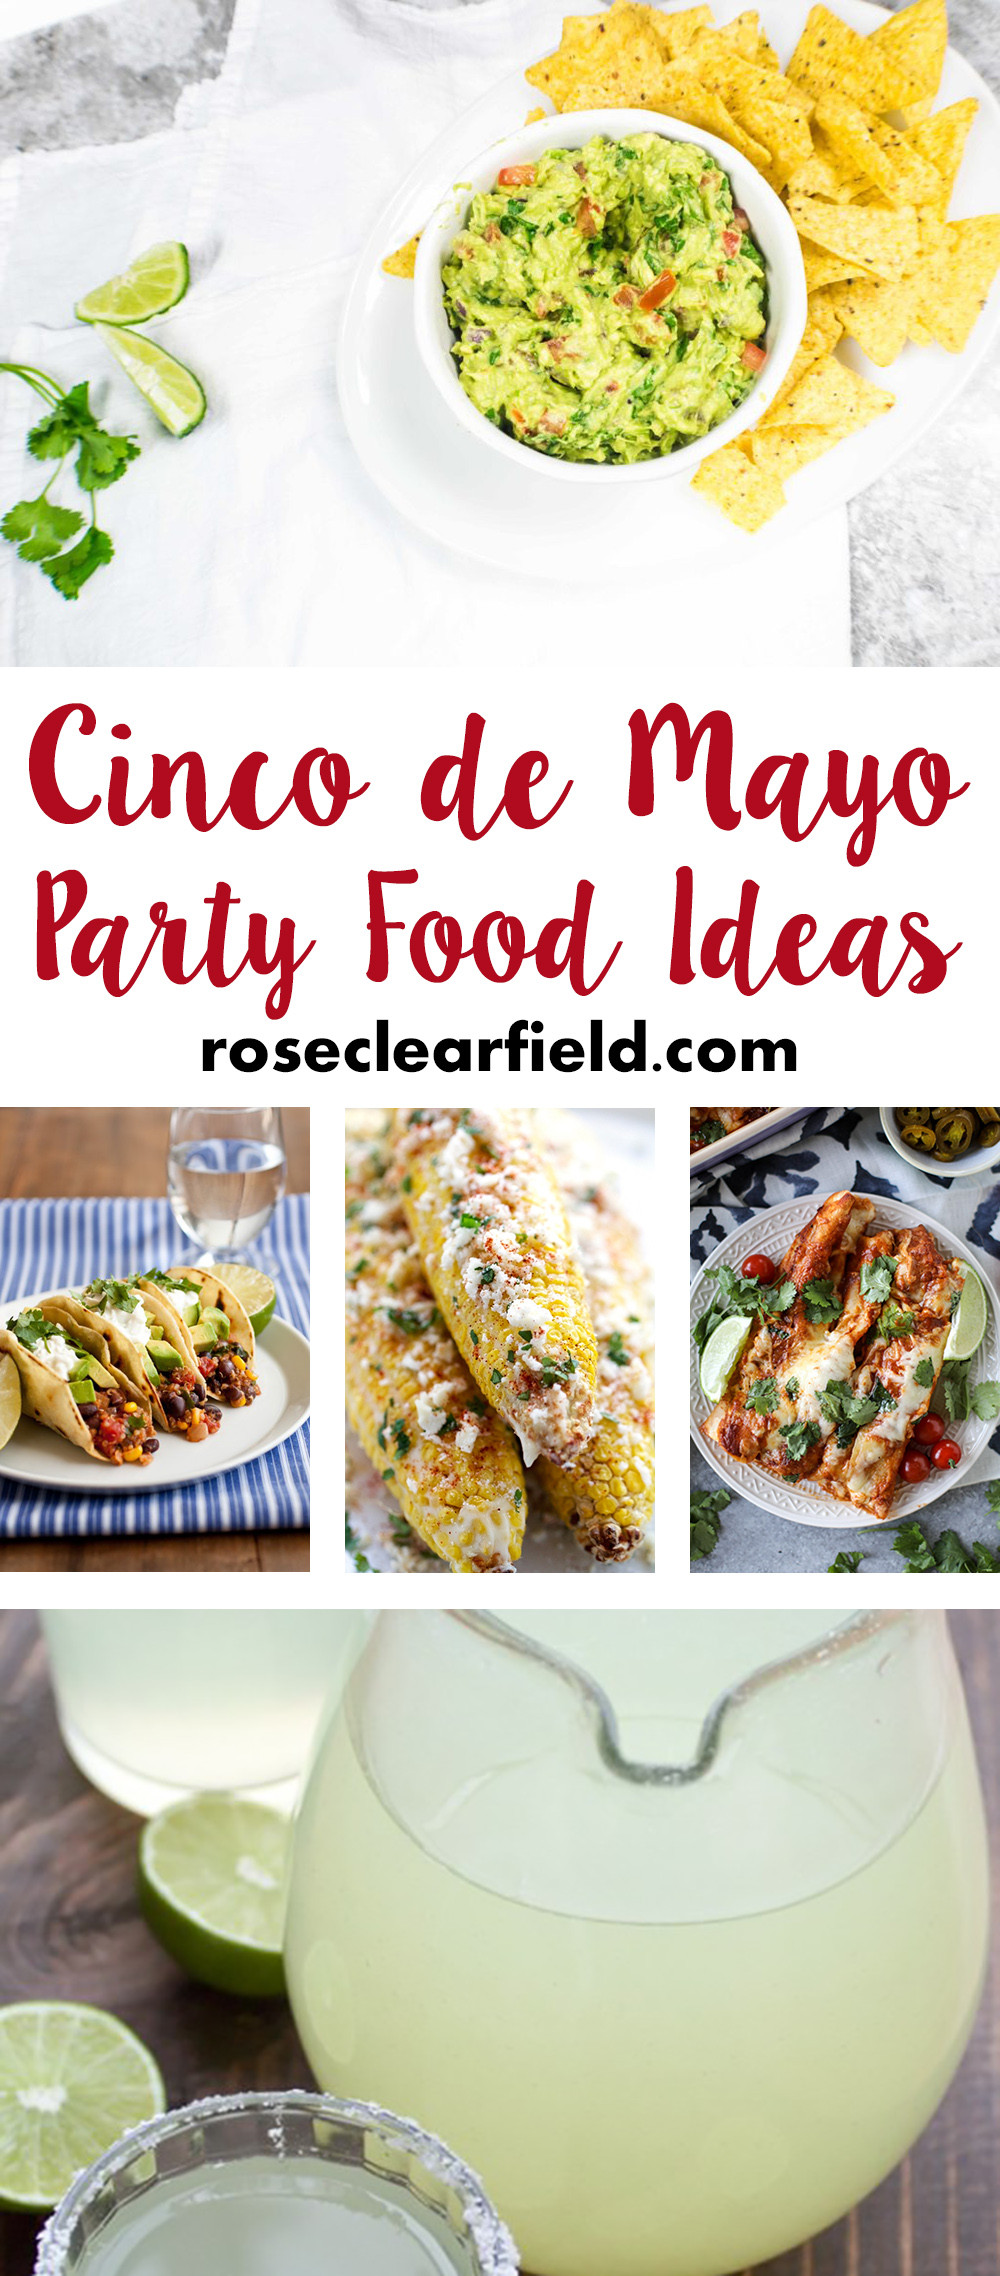 Cinco De Mayo Food Idea
 Cinco de Mayo Party Food Ideas • Rose Clearfield